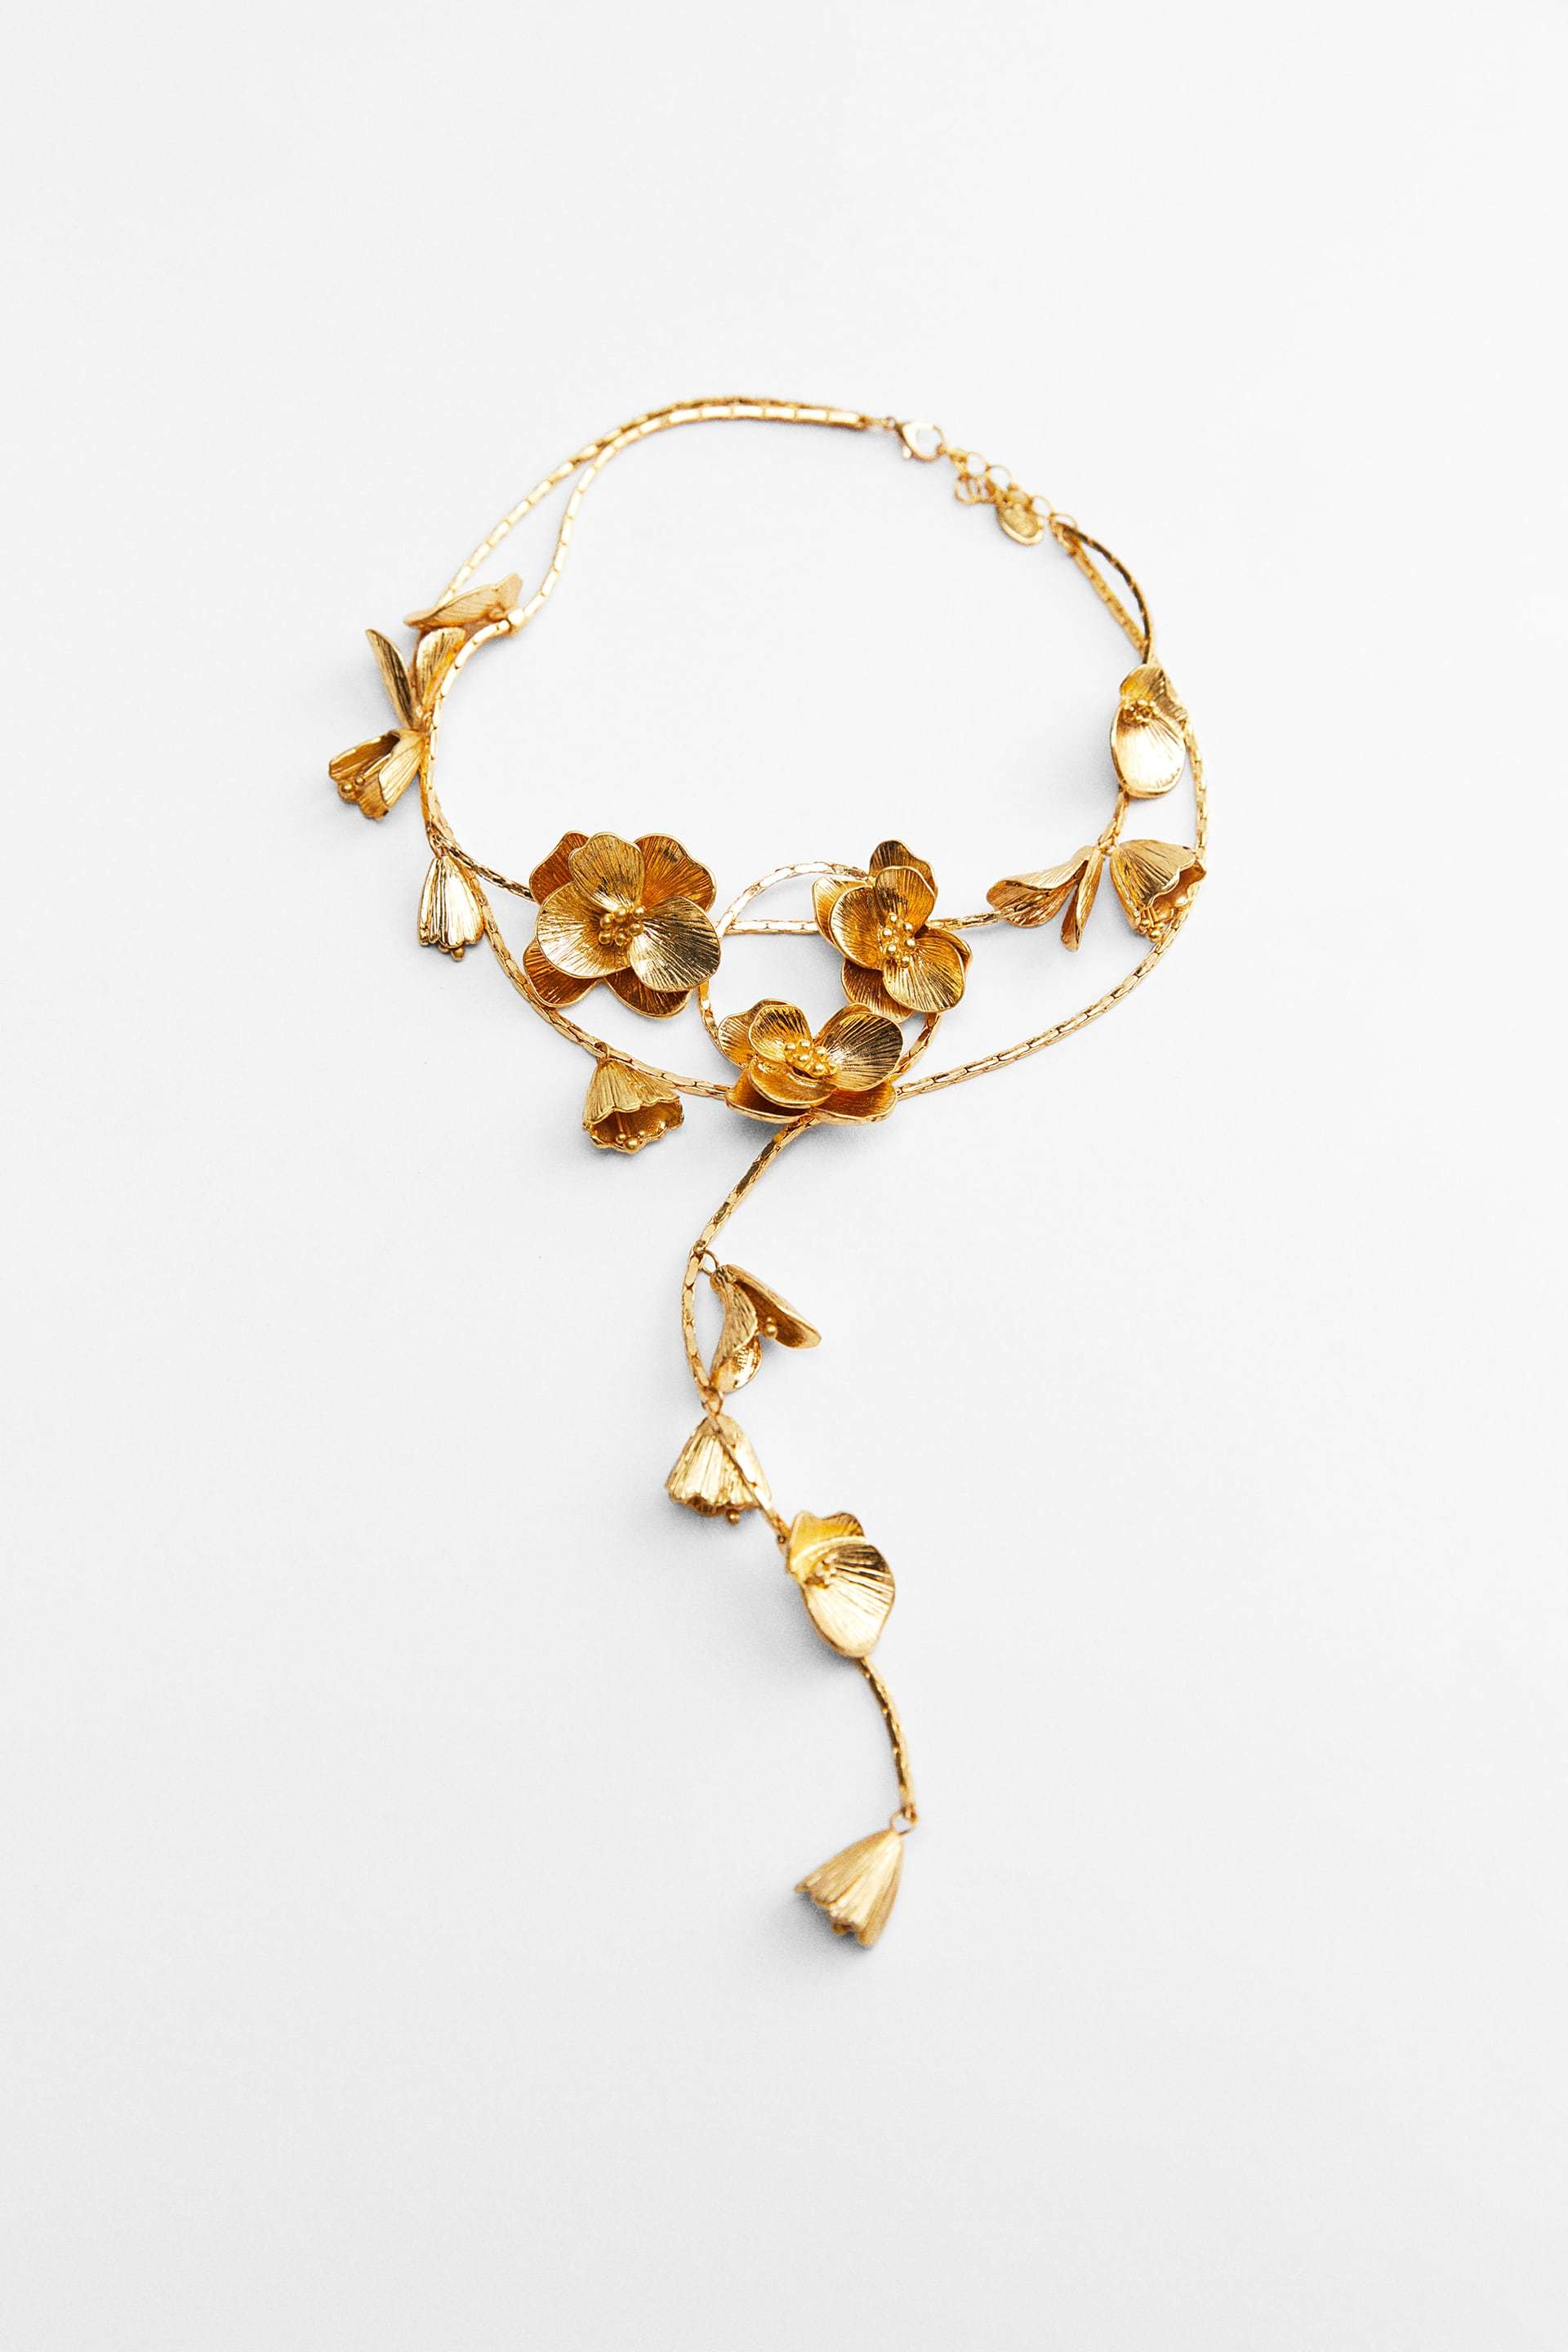 Collar de flores metálico, Zara (17,95 euros).